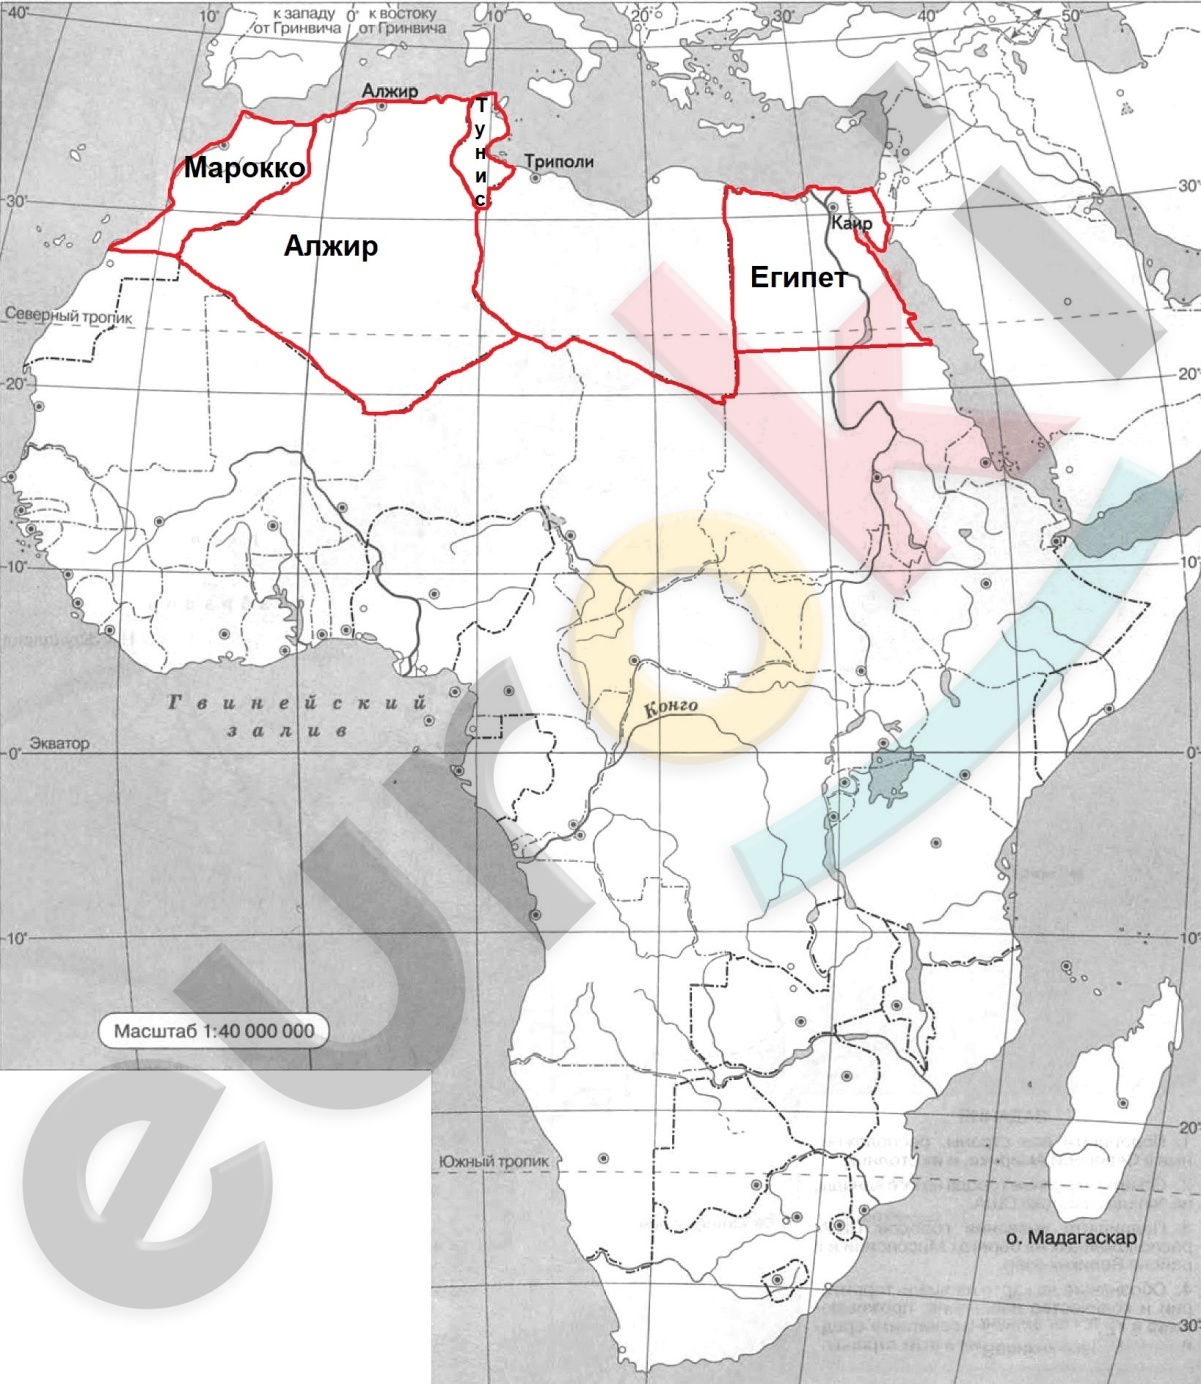 C:\Users\Андрей\Desktop\Работа\7 класс Коринская\карта африки - северная Африка.jpg